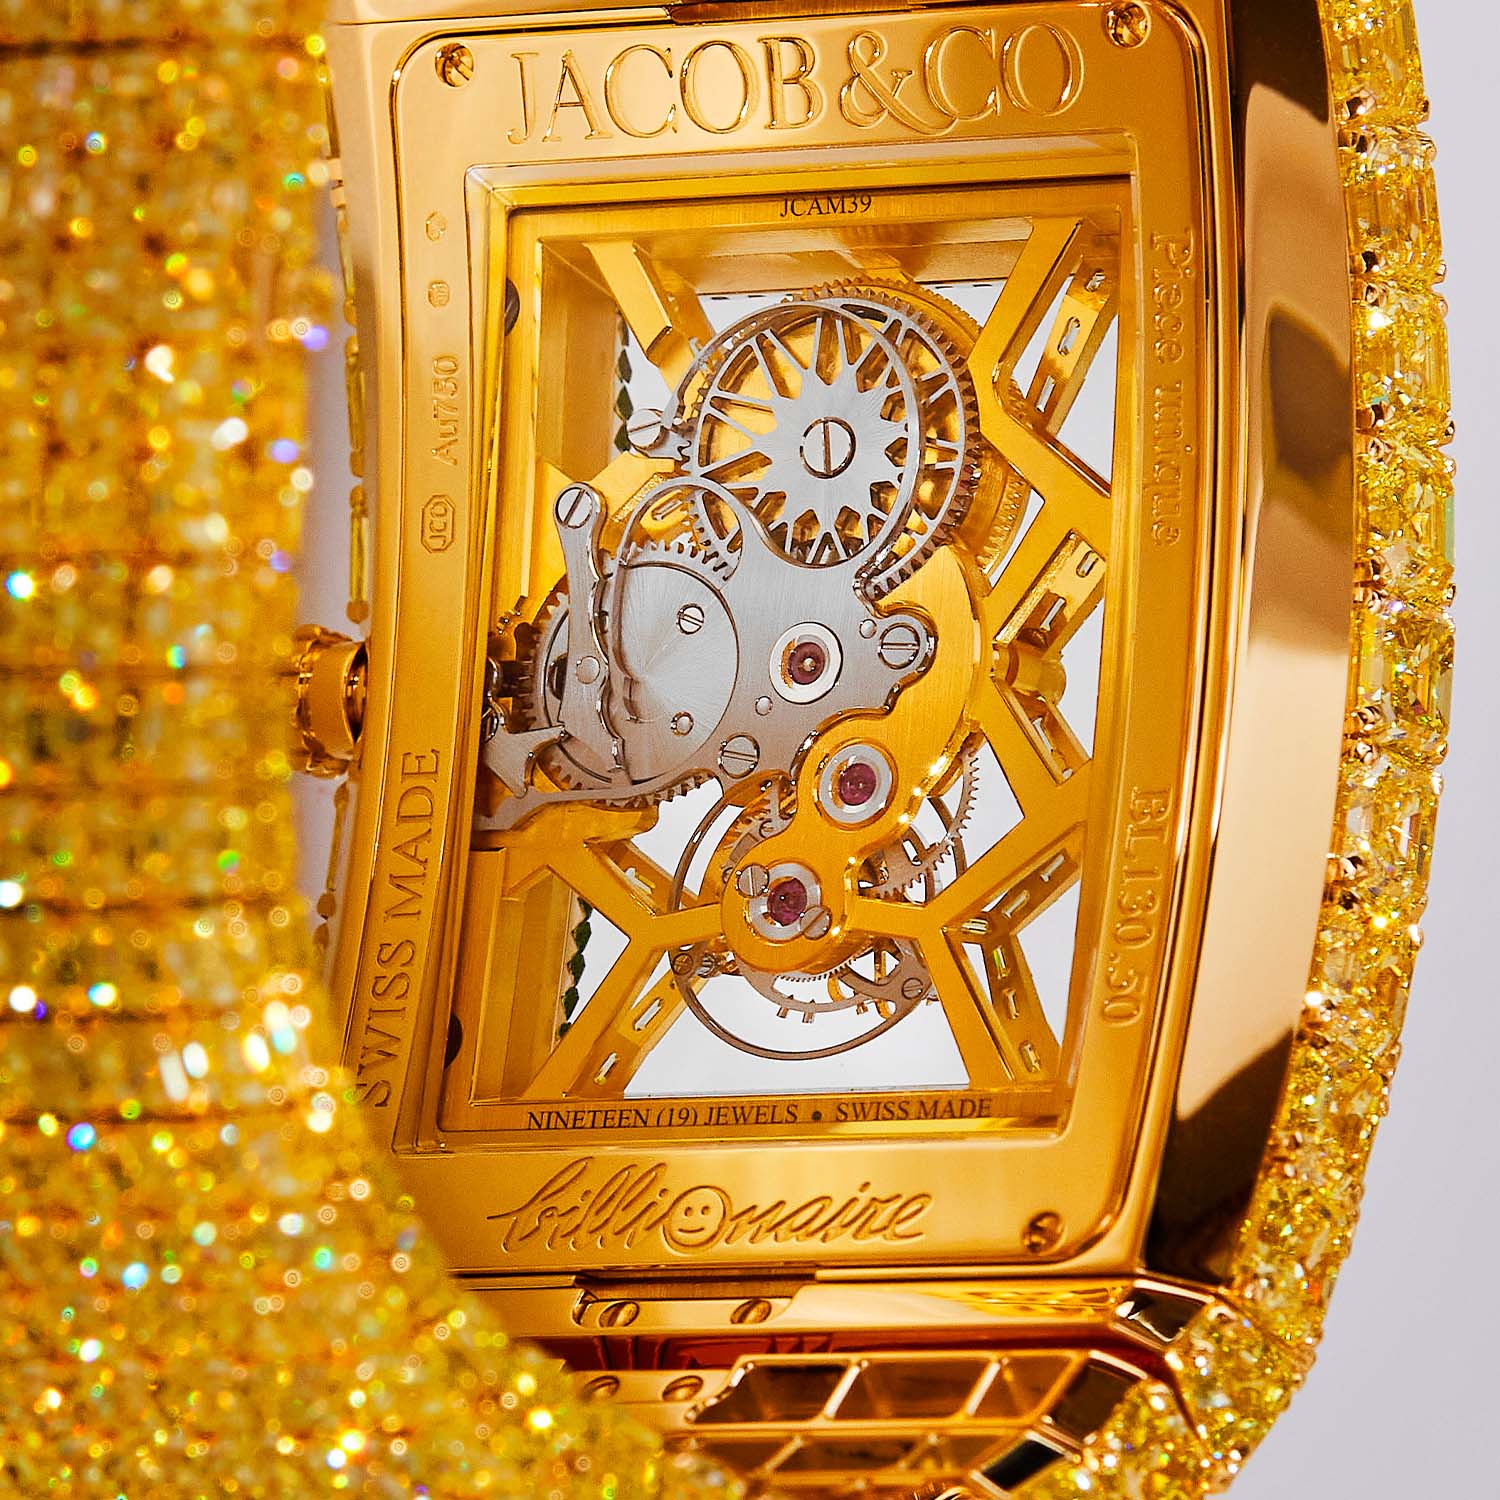 Chiếc đồng hồ mới nhất trị giá 20 triệu USD của Jacob & Co. là thứ giữ lại thời gian quý giá của một tỷ phú